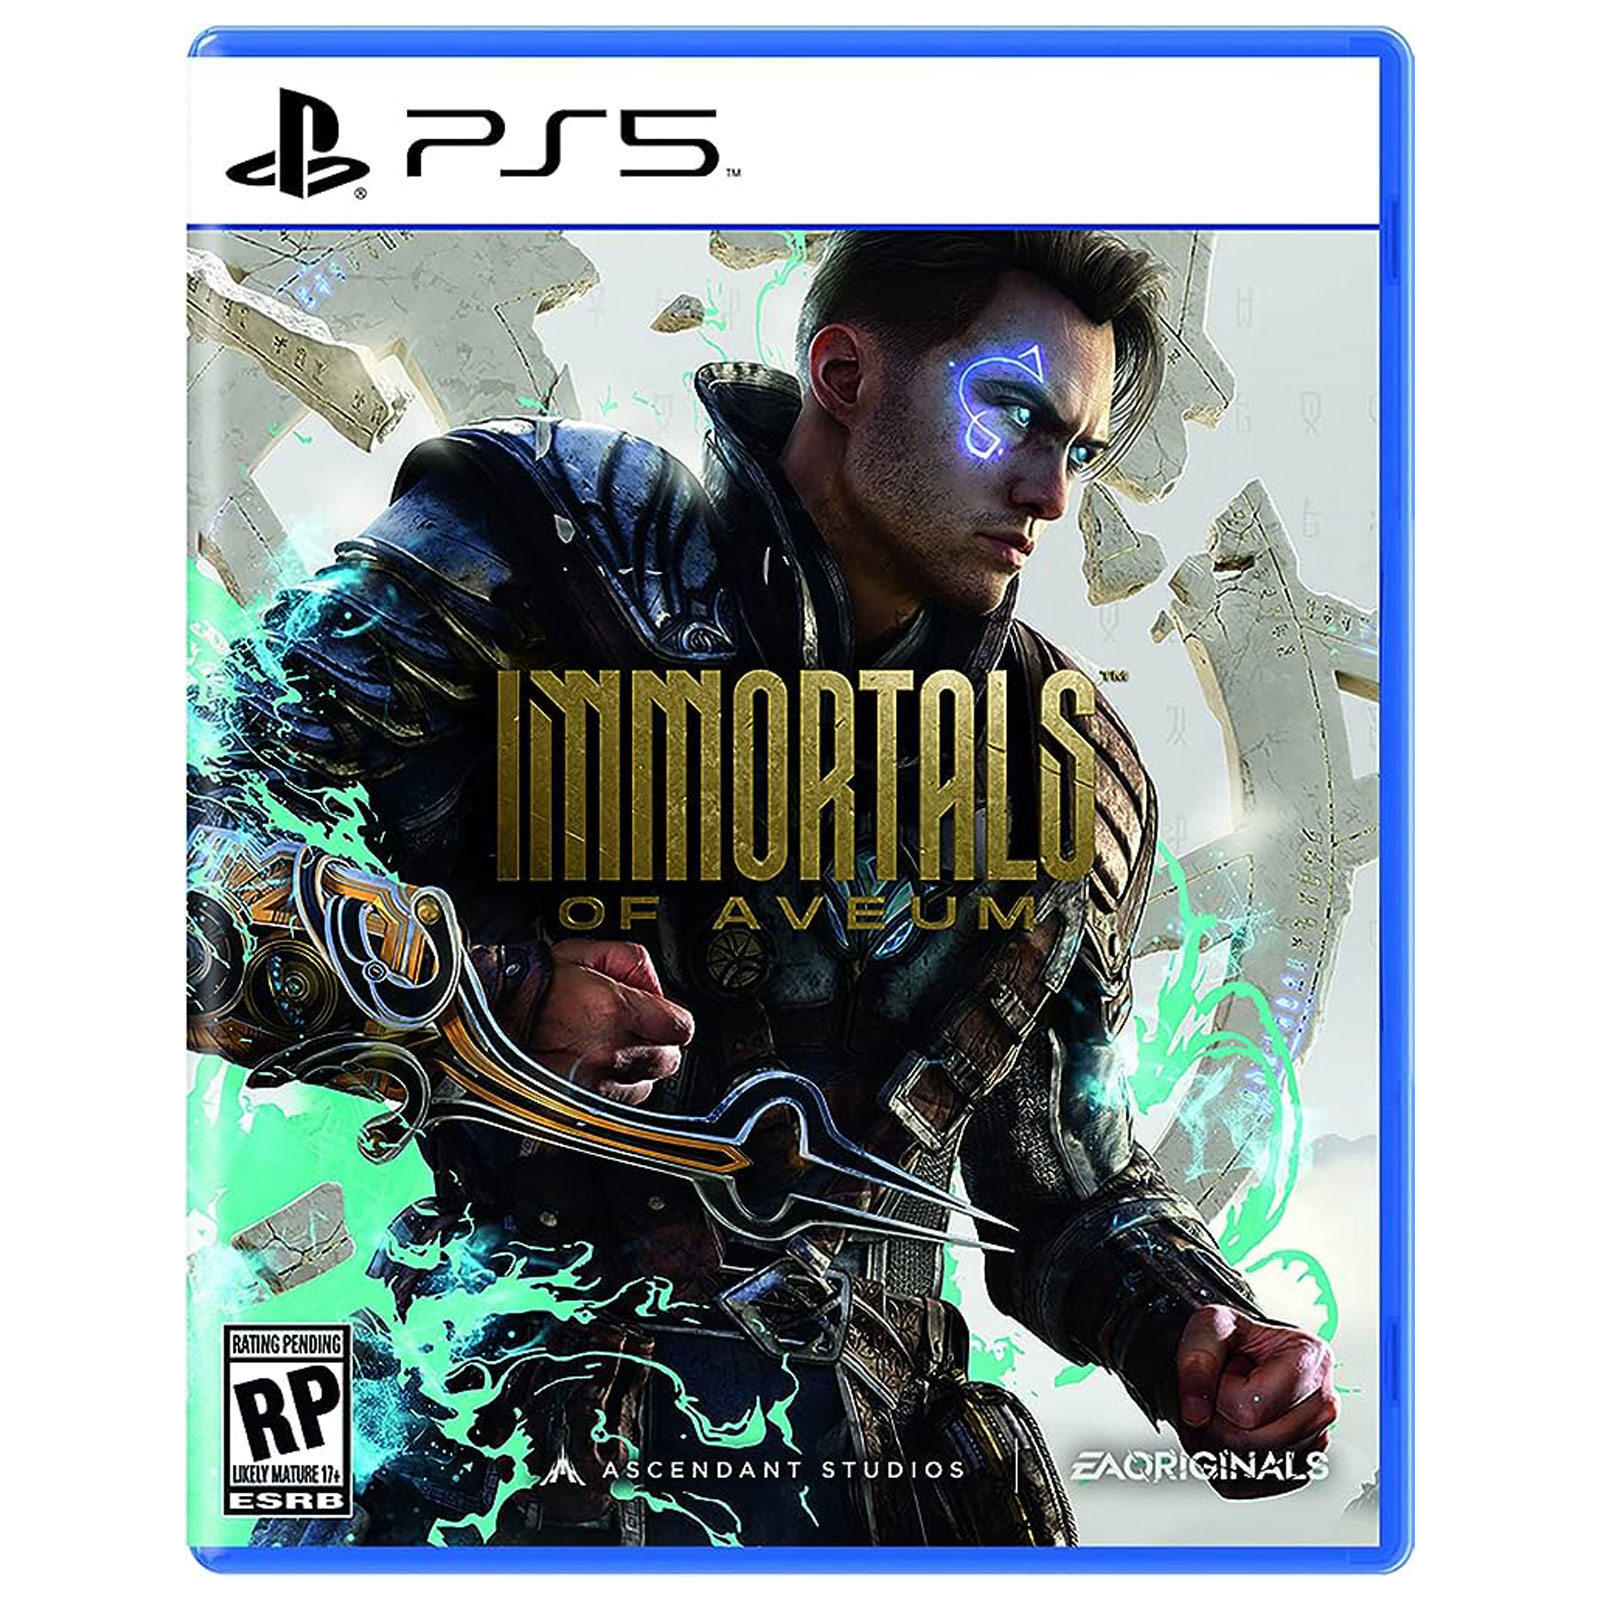 نکته خرید - قیمت روز بازی Immortals of Aveum مخصوص PS5 خرید